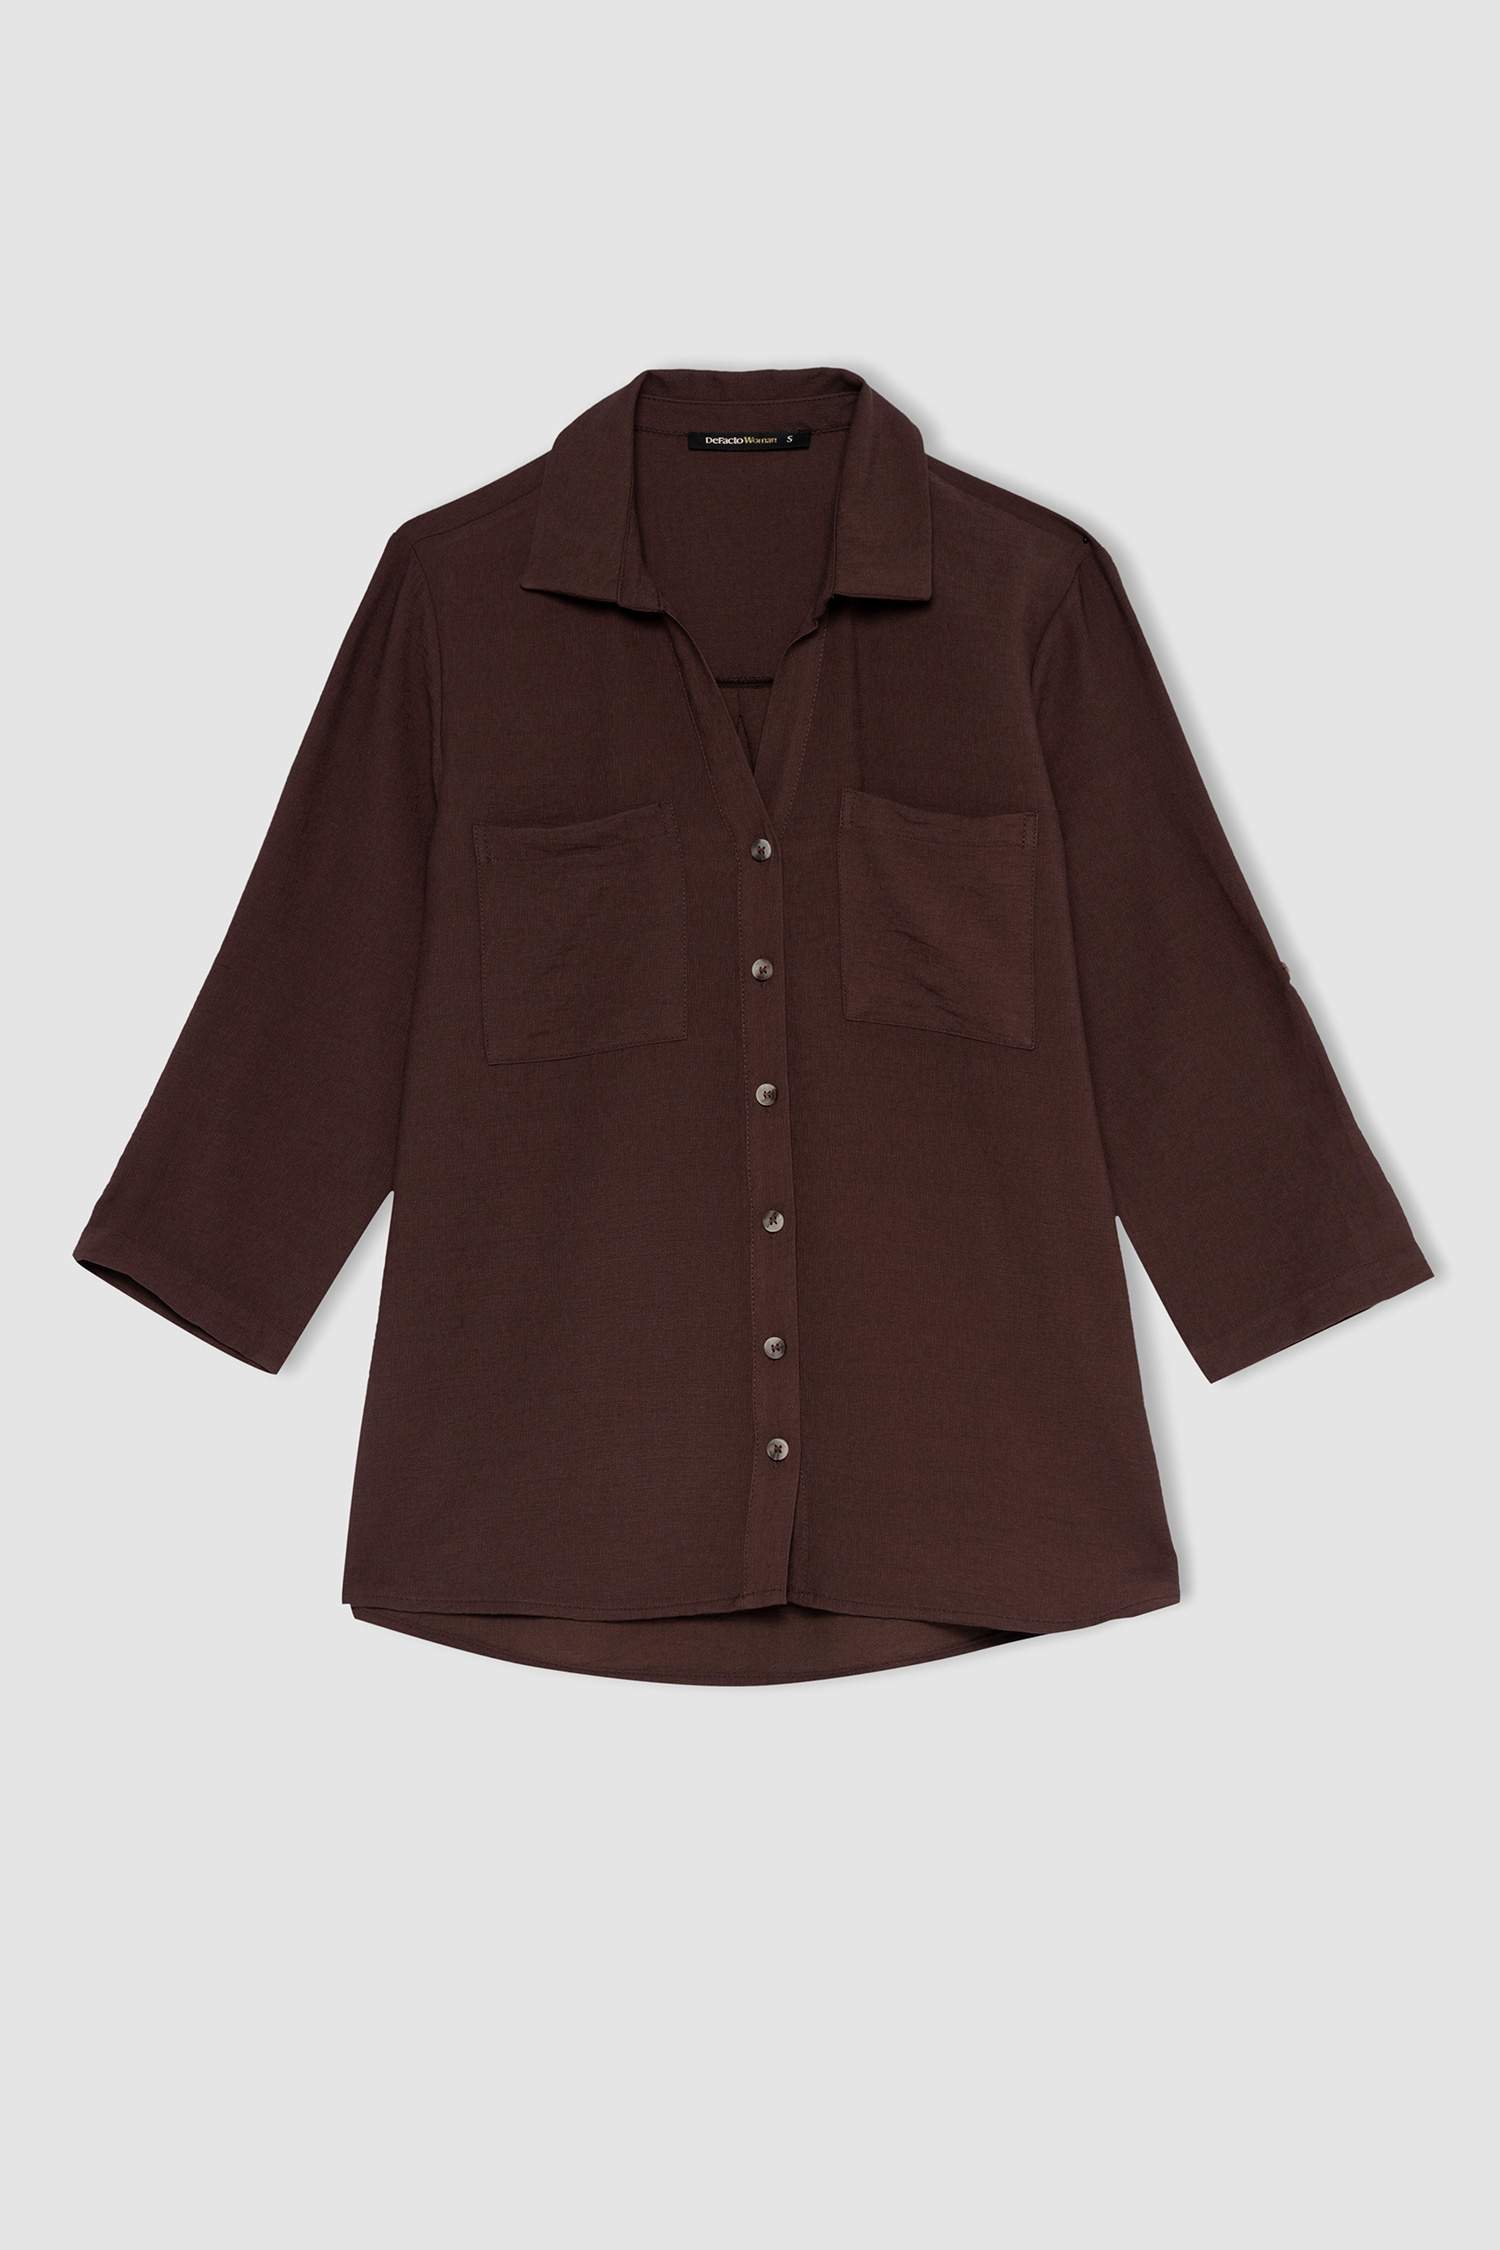 Buy Women Brown Solid Long Sleeves Shirt Online - 726507